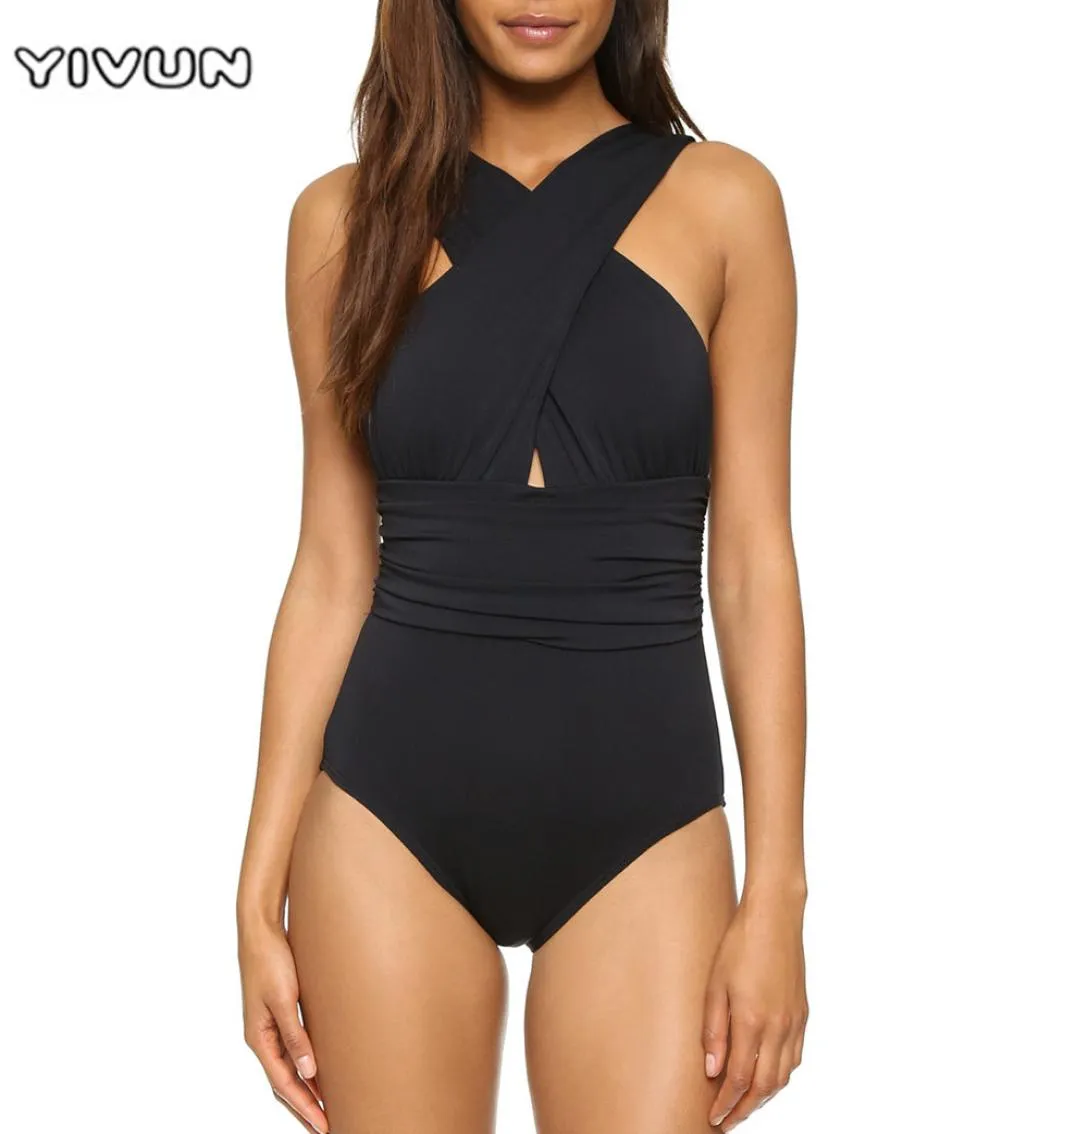 2021 brasiliansk bikini badkläder sexig kors halter kvinnor en bit baddräkt svart röd fast bad strand slitage simma retro kostymer5731325